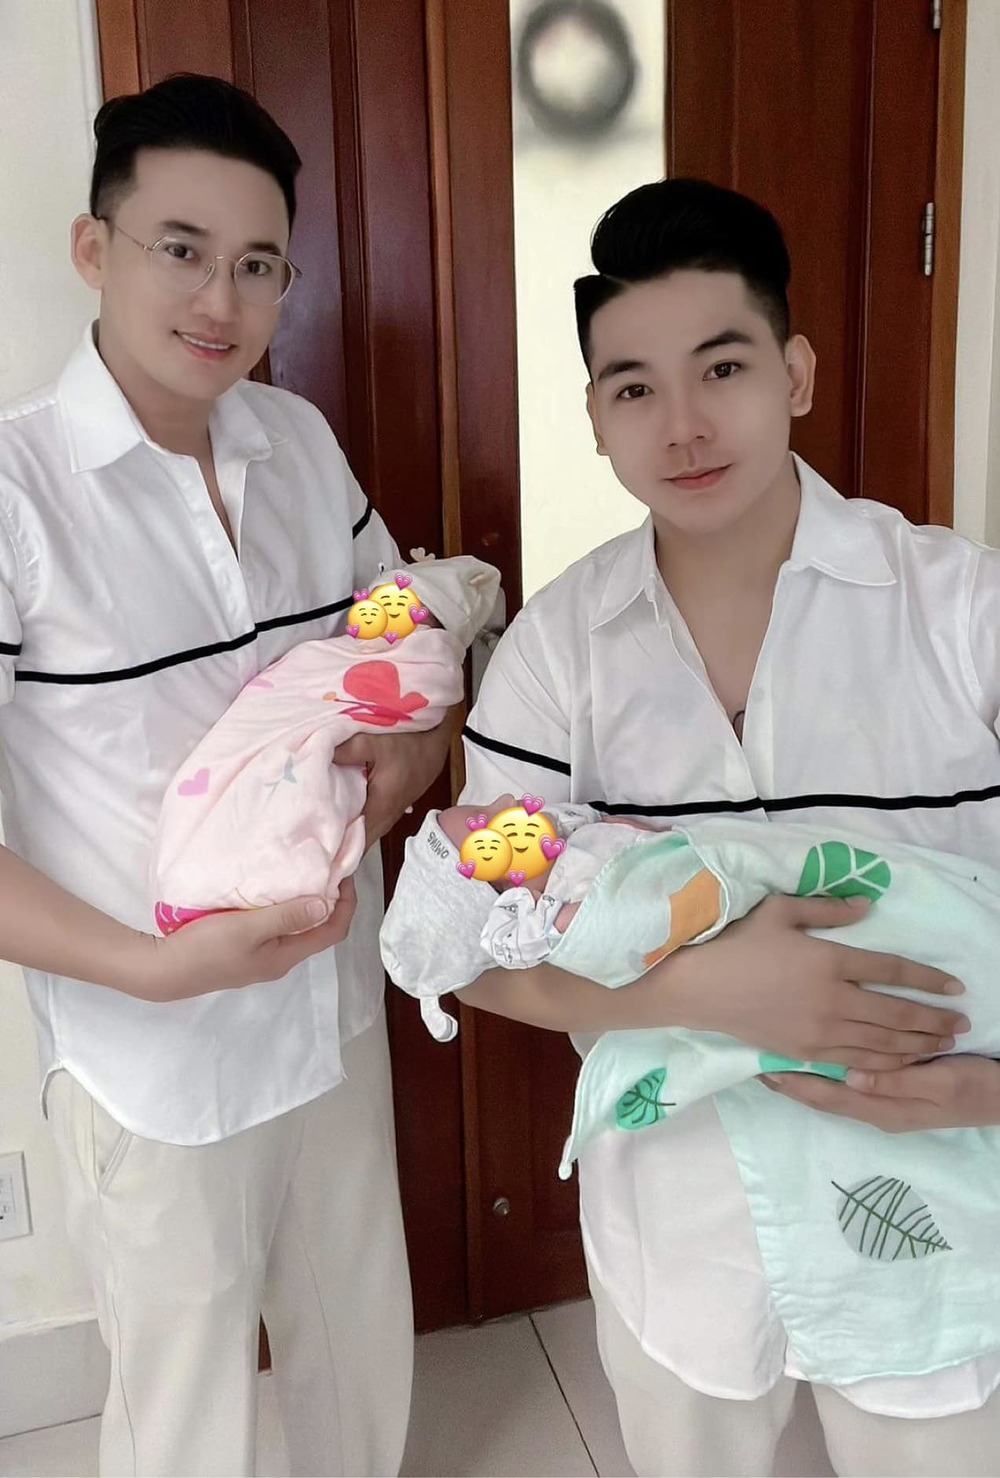 Hà Trí Quang - Thanh Đoàn chính thức lên chức bố chào đón 2 nhóc tì ra đời, tiết lộ nhiều điều về cặp song sinh  - Ảnh 3